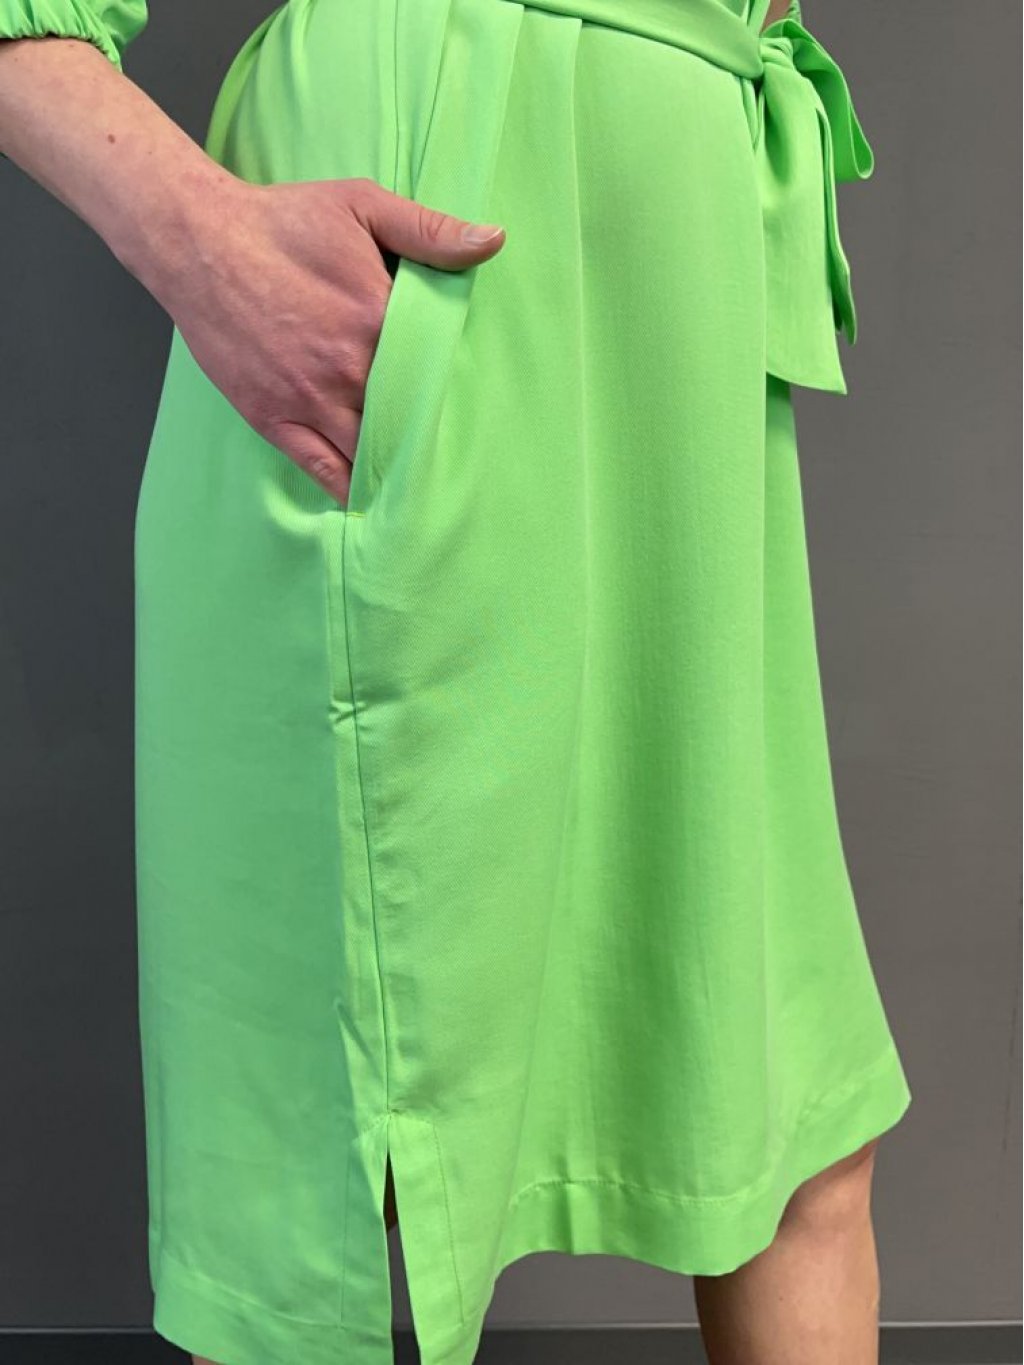 Šaty Kyra Dita zelené světlé s rafinovaným průstřihem